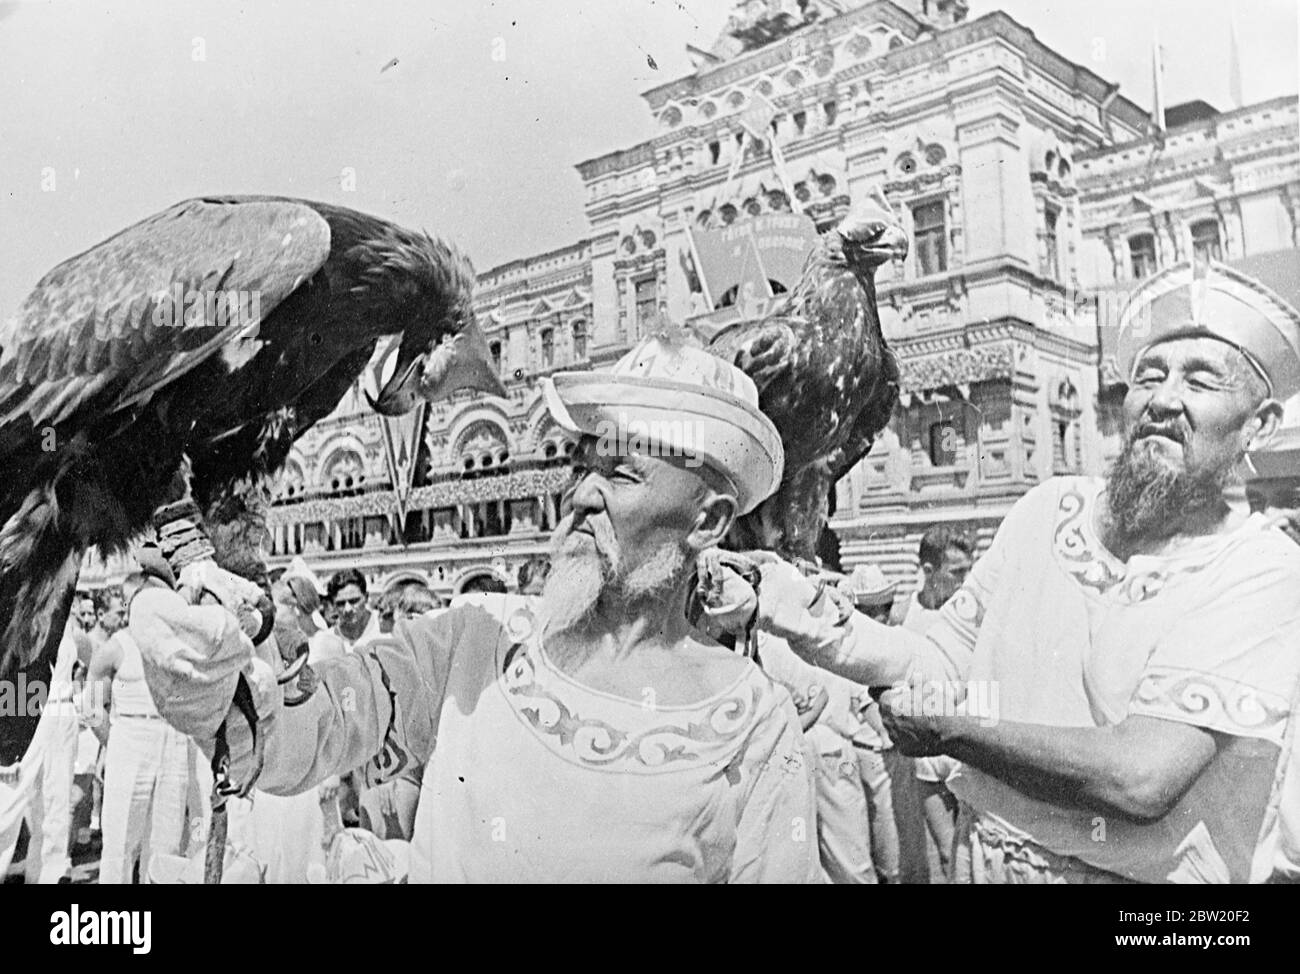 Jäger aus der sozialistischen sowjetrepublik, die ihre goldenen Adler in der Parade trugen, wo 40,000 Athleten aus den 11 Republiken, die die Sowjetunion bilden, triumphierend über den Roten Platz Moskau vormarschierten, Den 20. Jahrestag der Revolution und deren Inbetriebnahme der neuen Stalin-Verfassung zu feiern. In der Parade waren Vertreter aller Arten von Sport von d Gymnastik zu Jäger mit Adler. 15 Juli 1937 Stockfoto